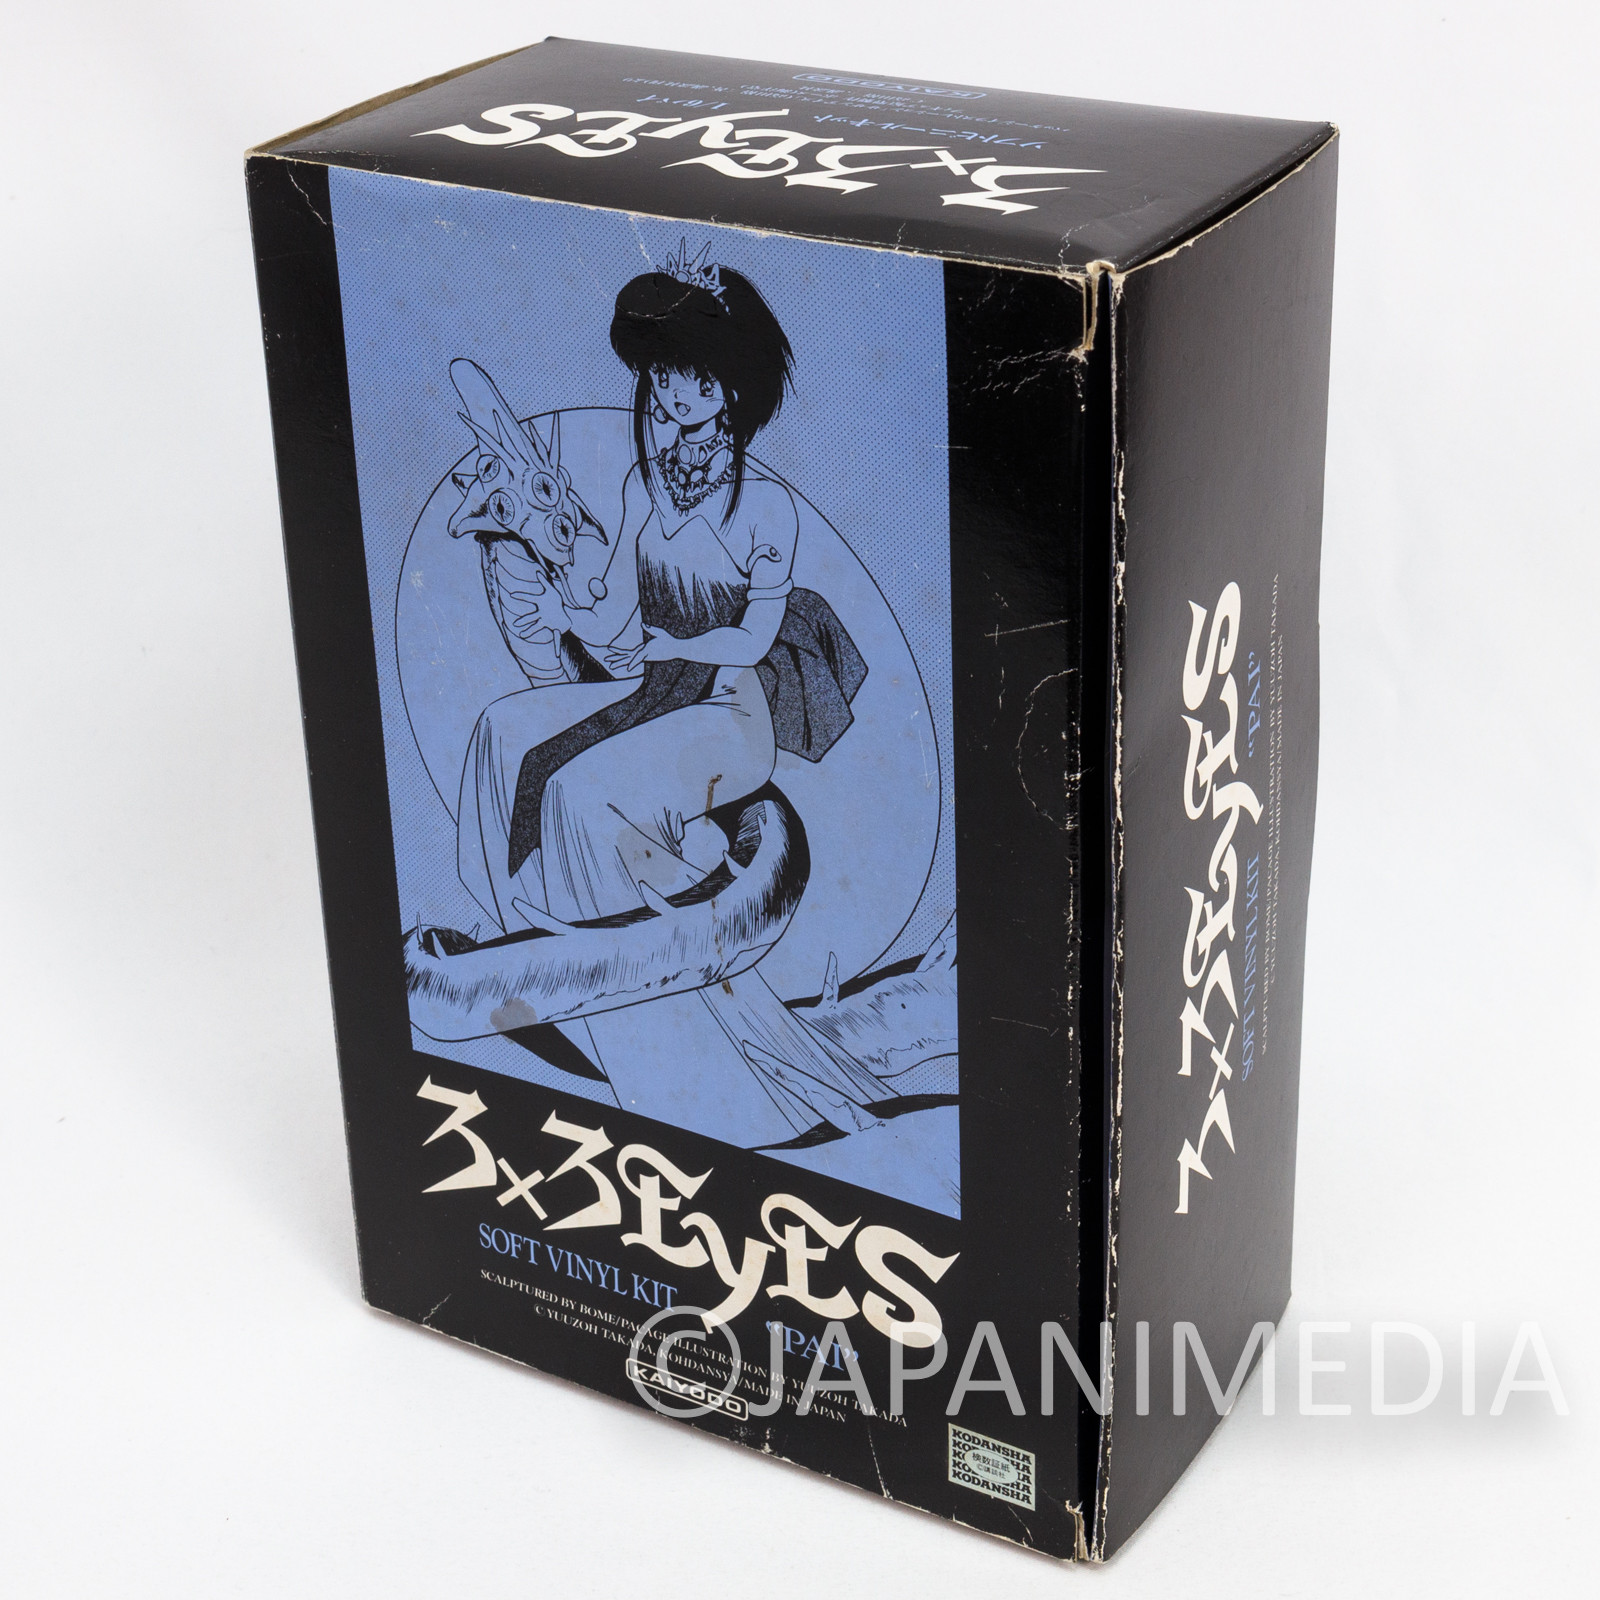 Retro RARE! 3x3 Eyes Pai Sanjiyan 1/6 Scale Soft Vinyl Model Kit Kaiyodo